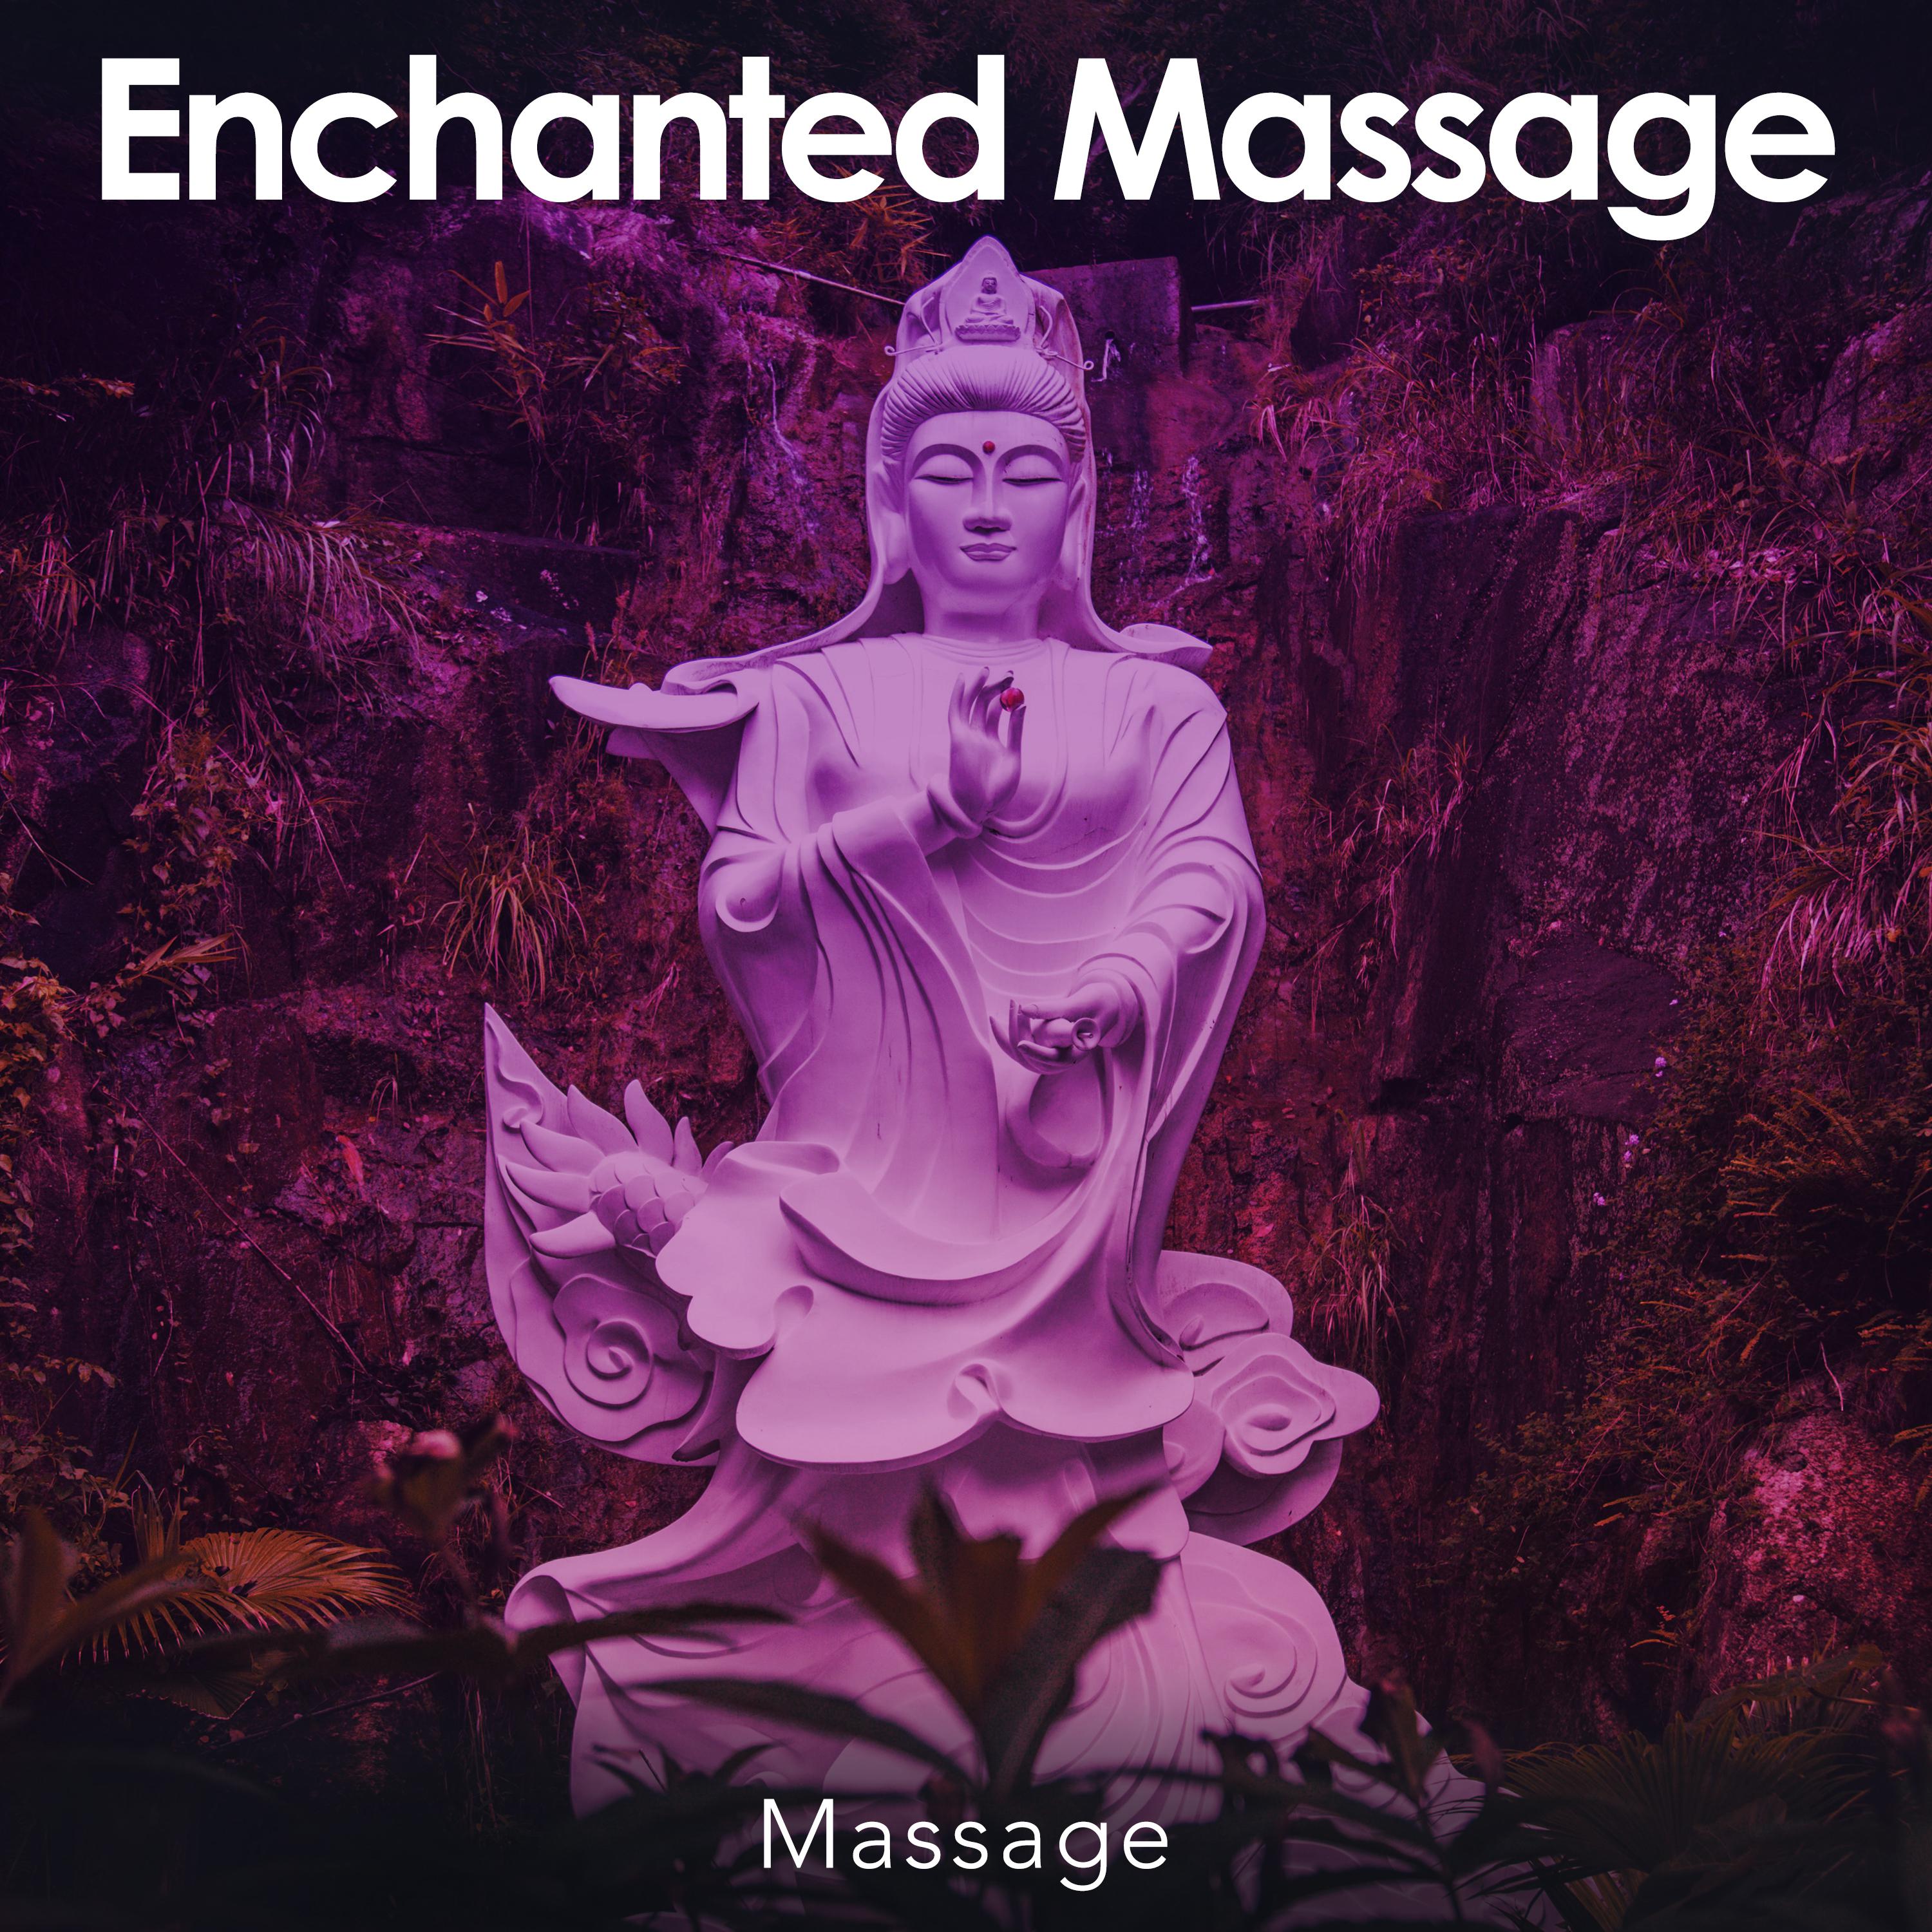 Enchanted Massage